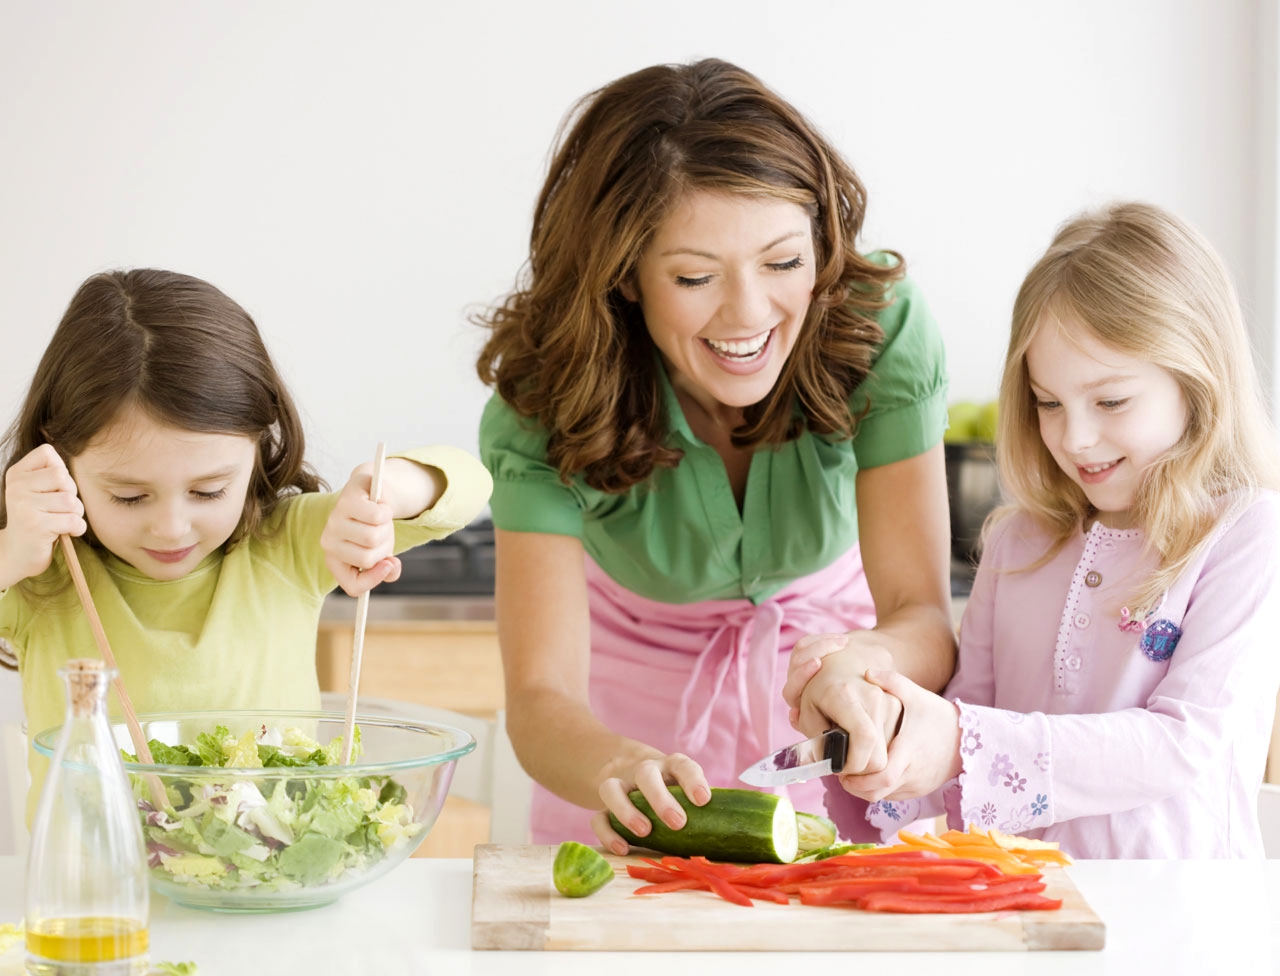 Няня помогает девочкам готовить салат